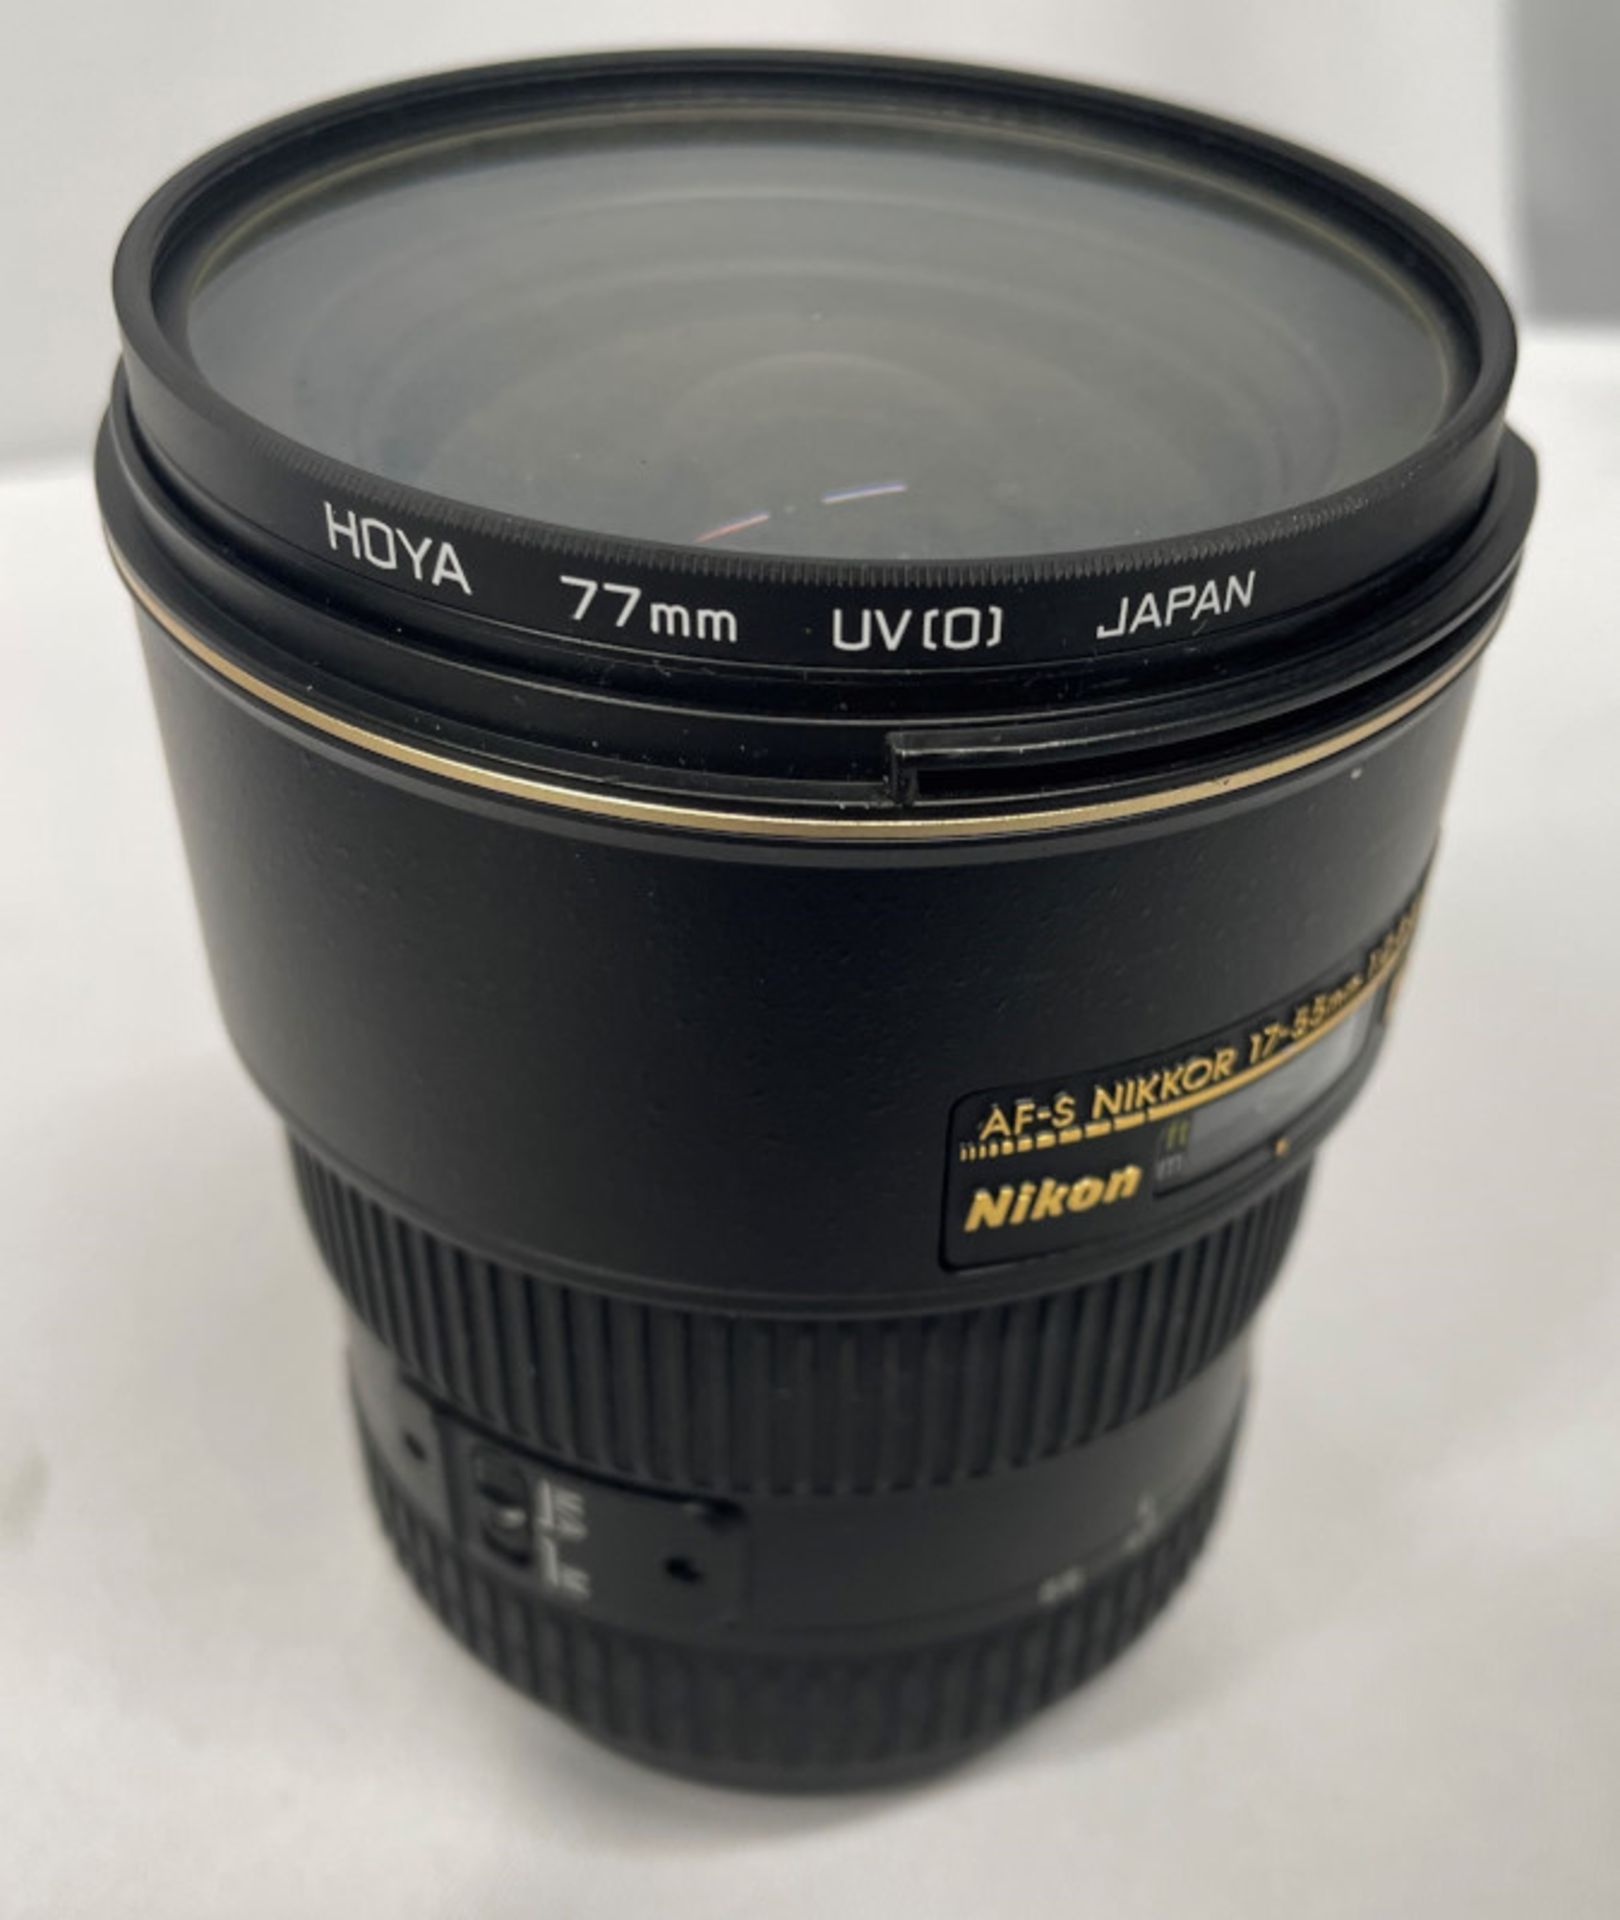 Nikon DX AF-S Nikkor 17-55mm - 1:2.8G ED Lens - Serial No. 332022 with HOYA 77mm UV(O) Filter - Image 6 of 8